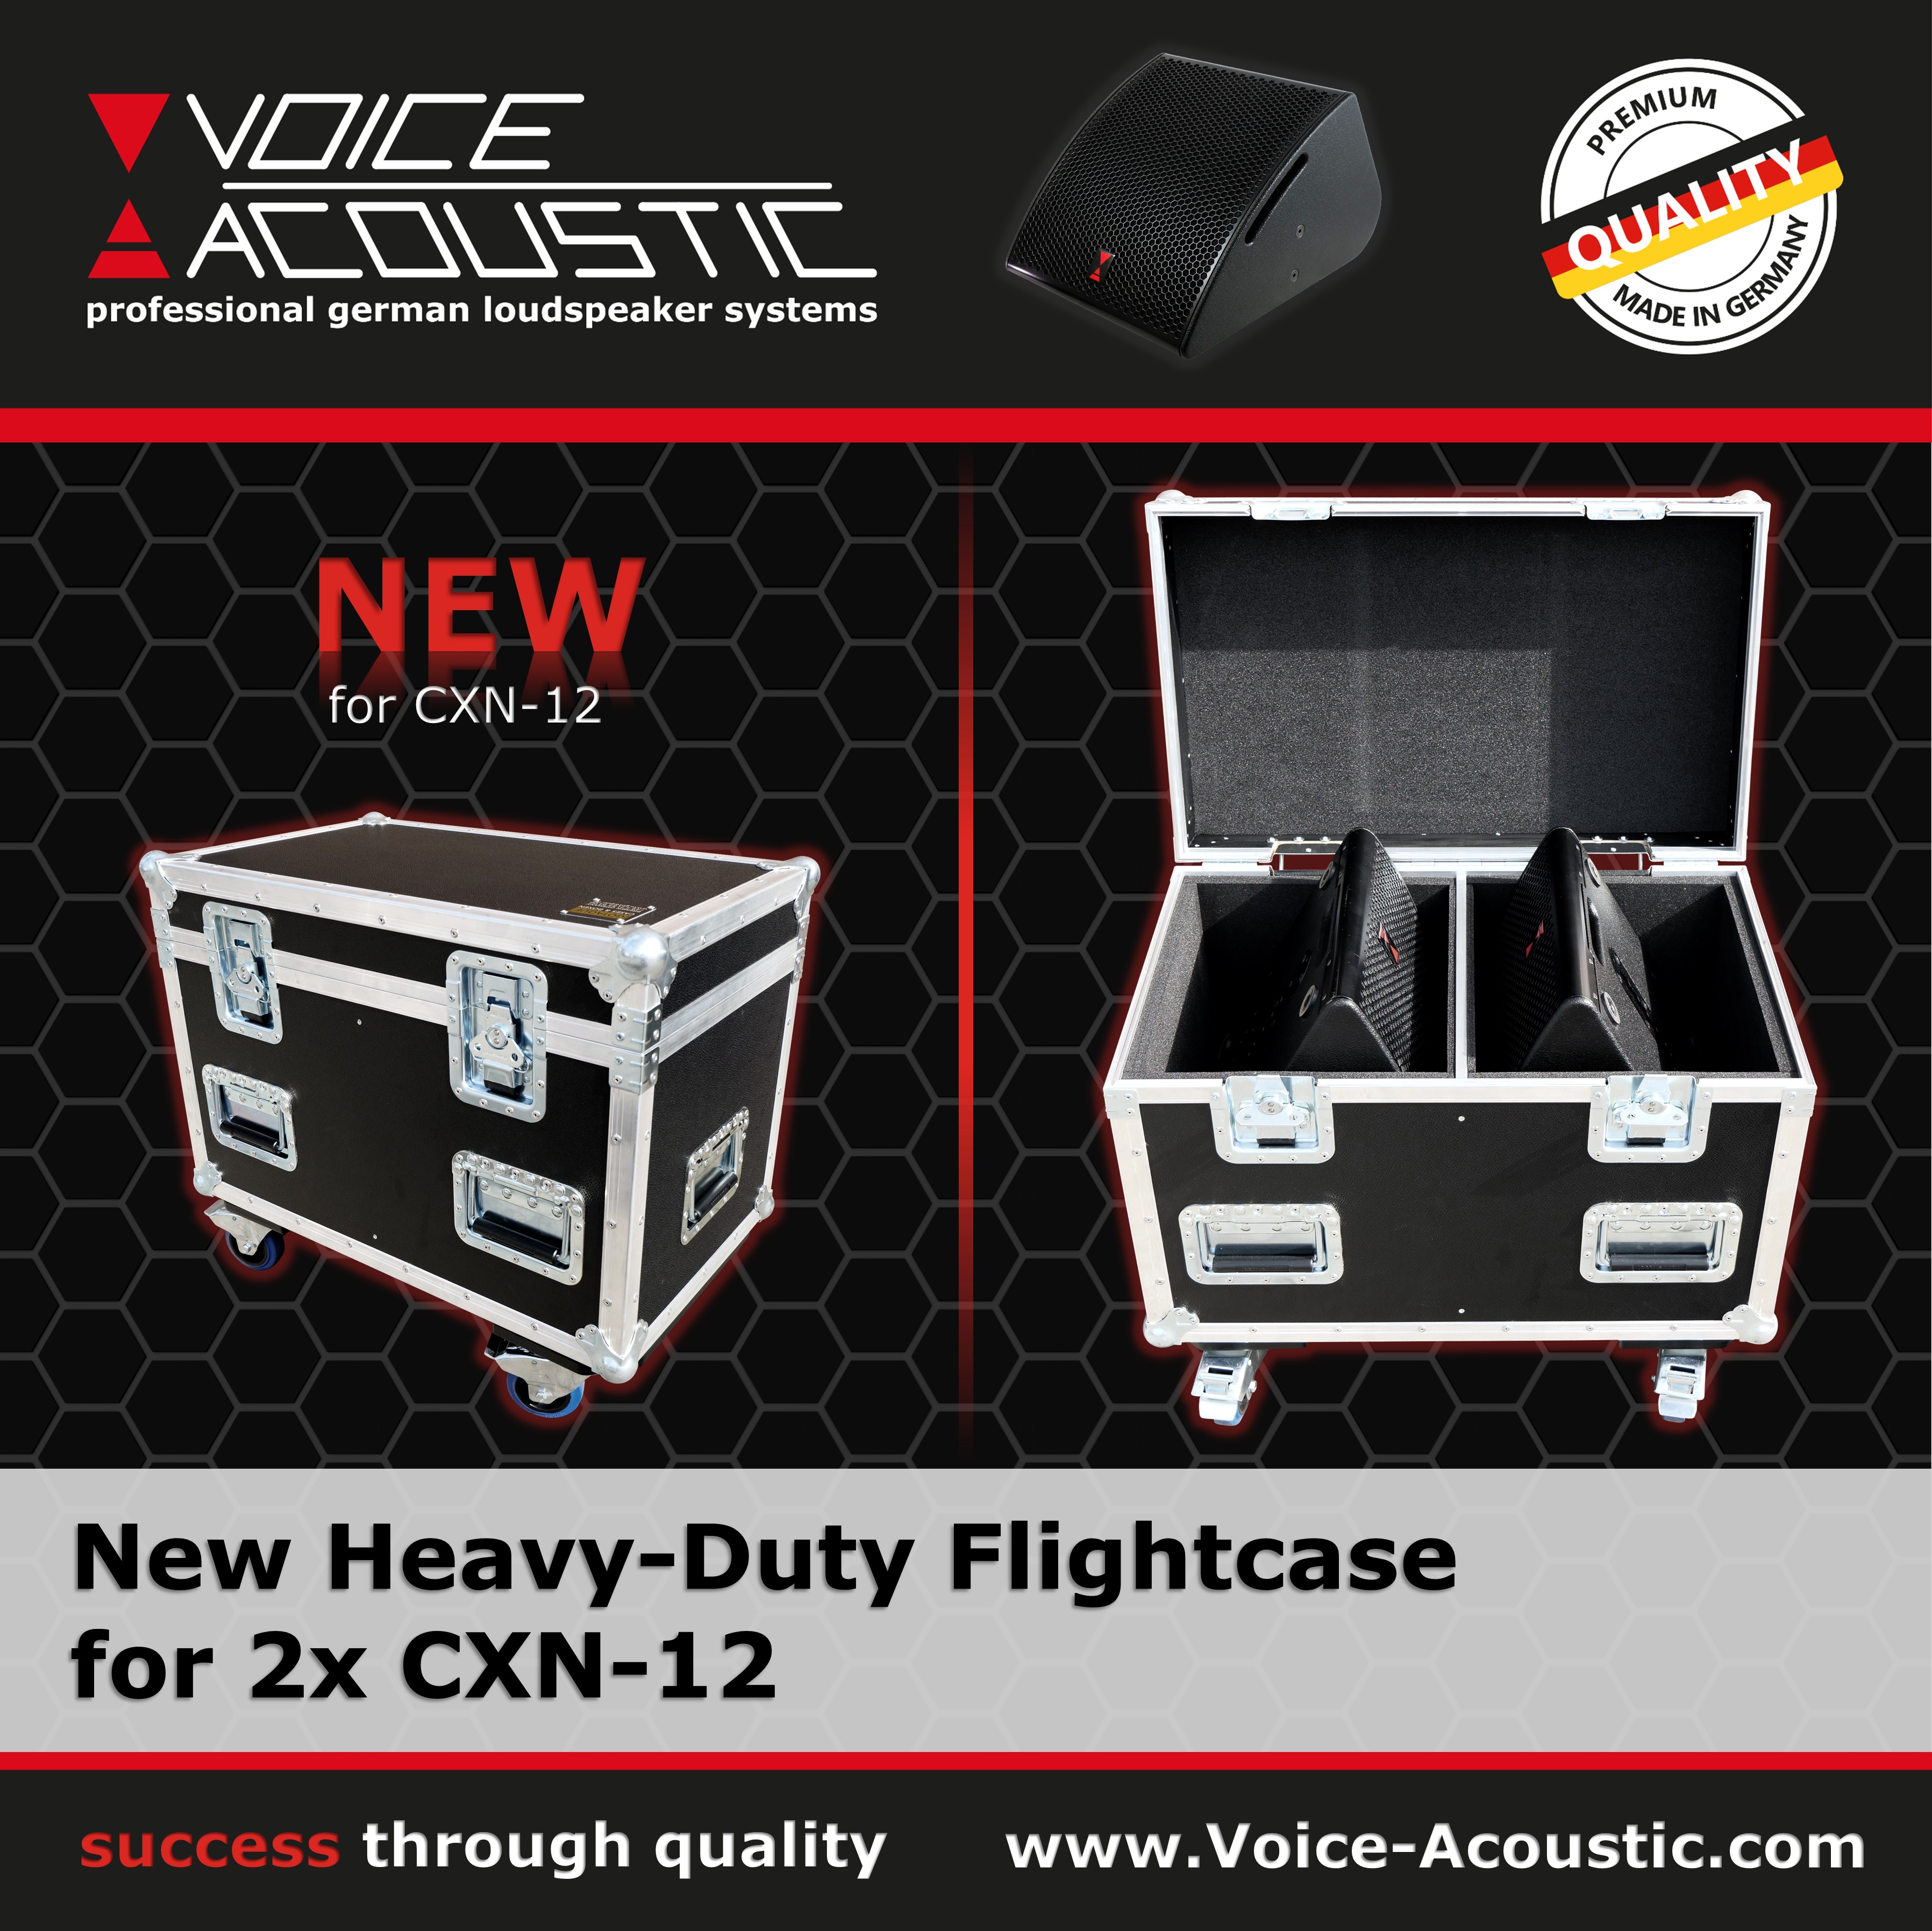 New Heavy-Duty Flightcase for CXN-12